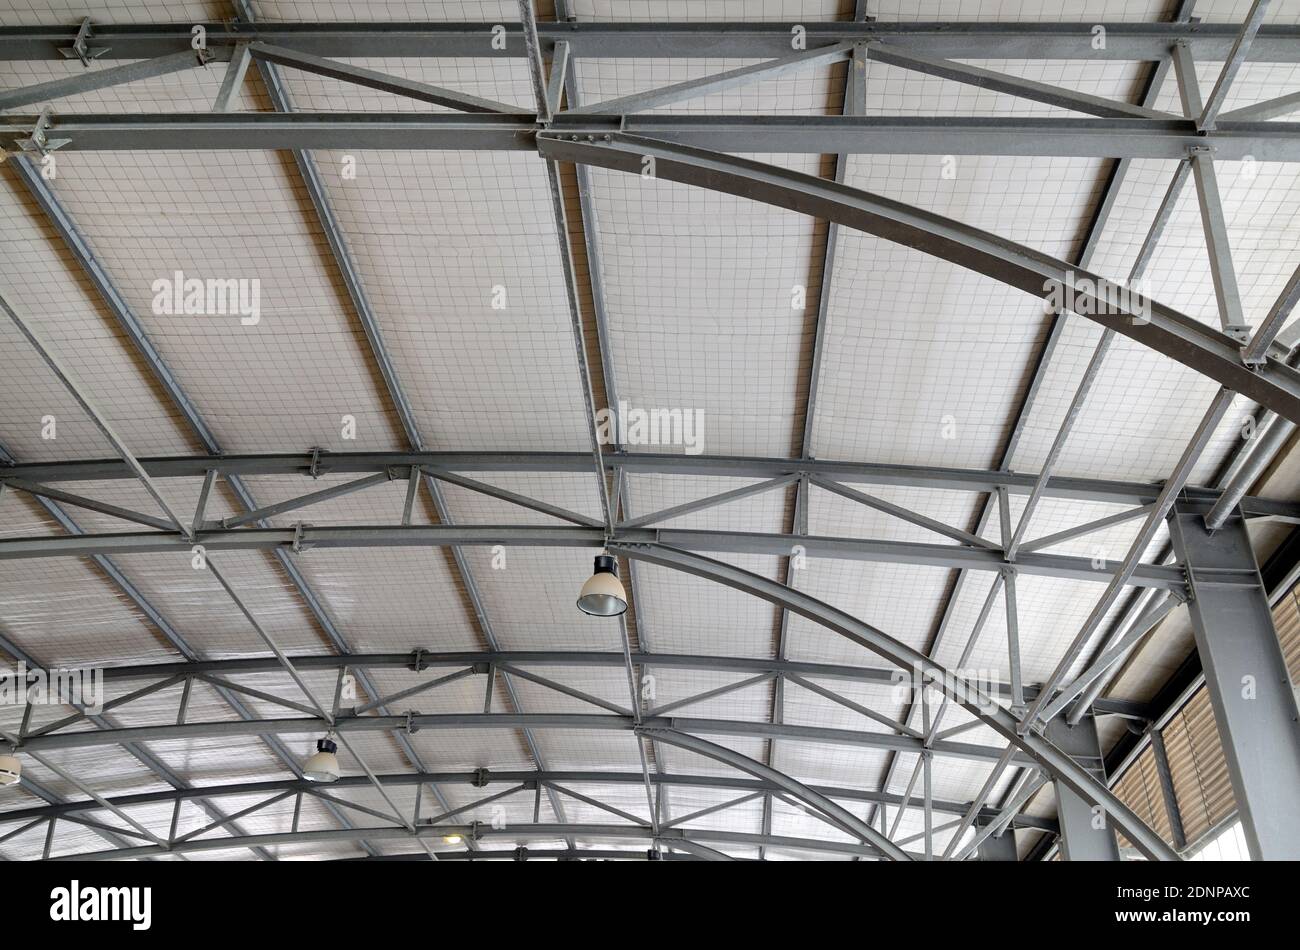 Cadre de toit en métal ou structure de toit du bâtiment de stade intérieur Avec poutres et barres métalliques Banque D'Images